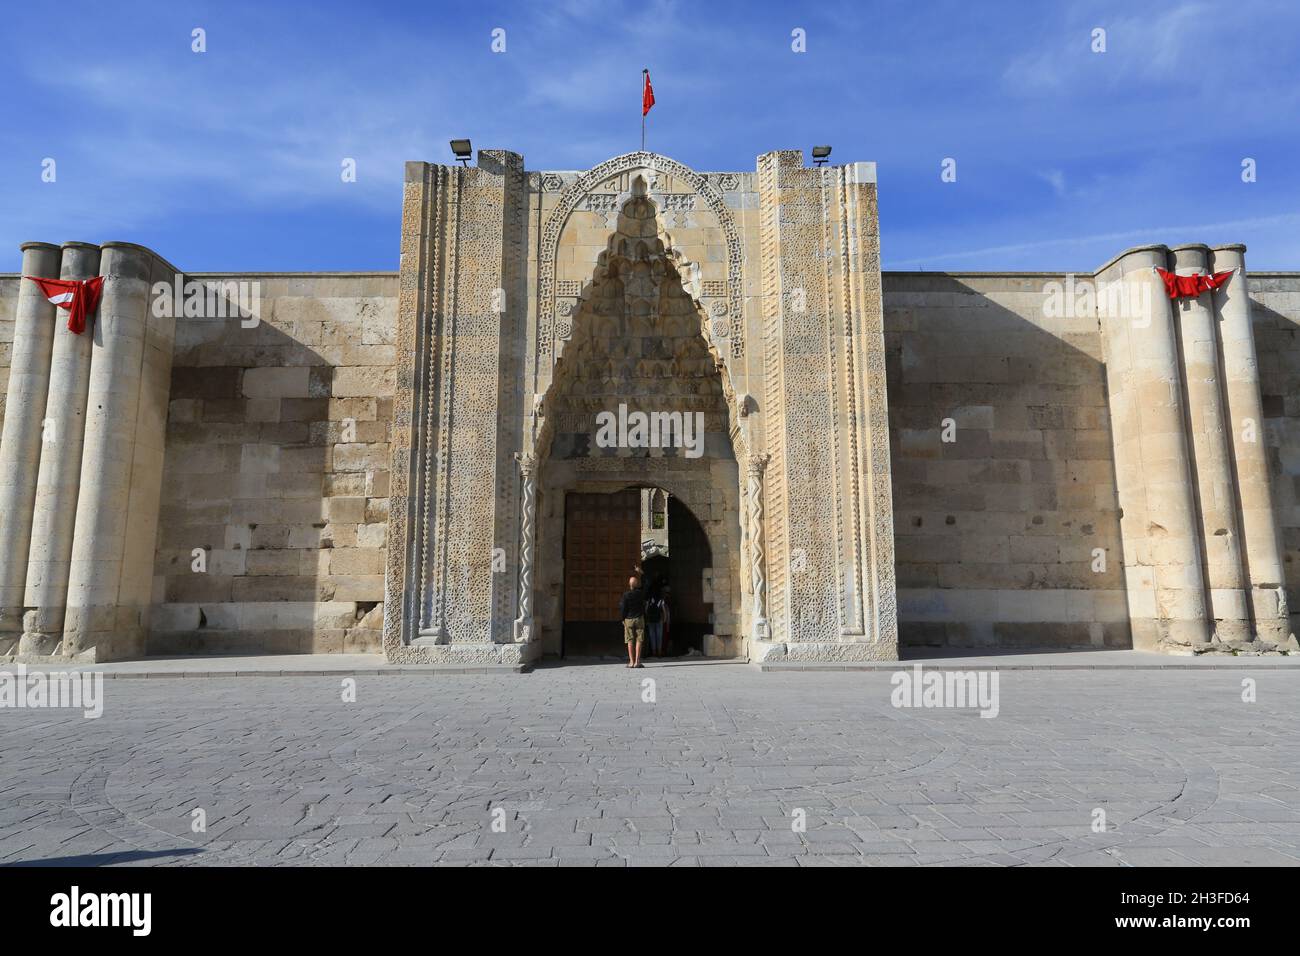 Il Sultan Han caravanserai ha fornito un arresto sicuro di riposo per i caravan che attraversano la strada della seta in Turchia. Il cancello d'ingresso è alto 13 m costruito in marmo. Foto Stock